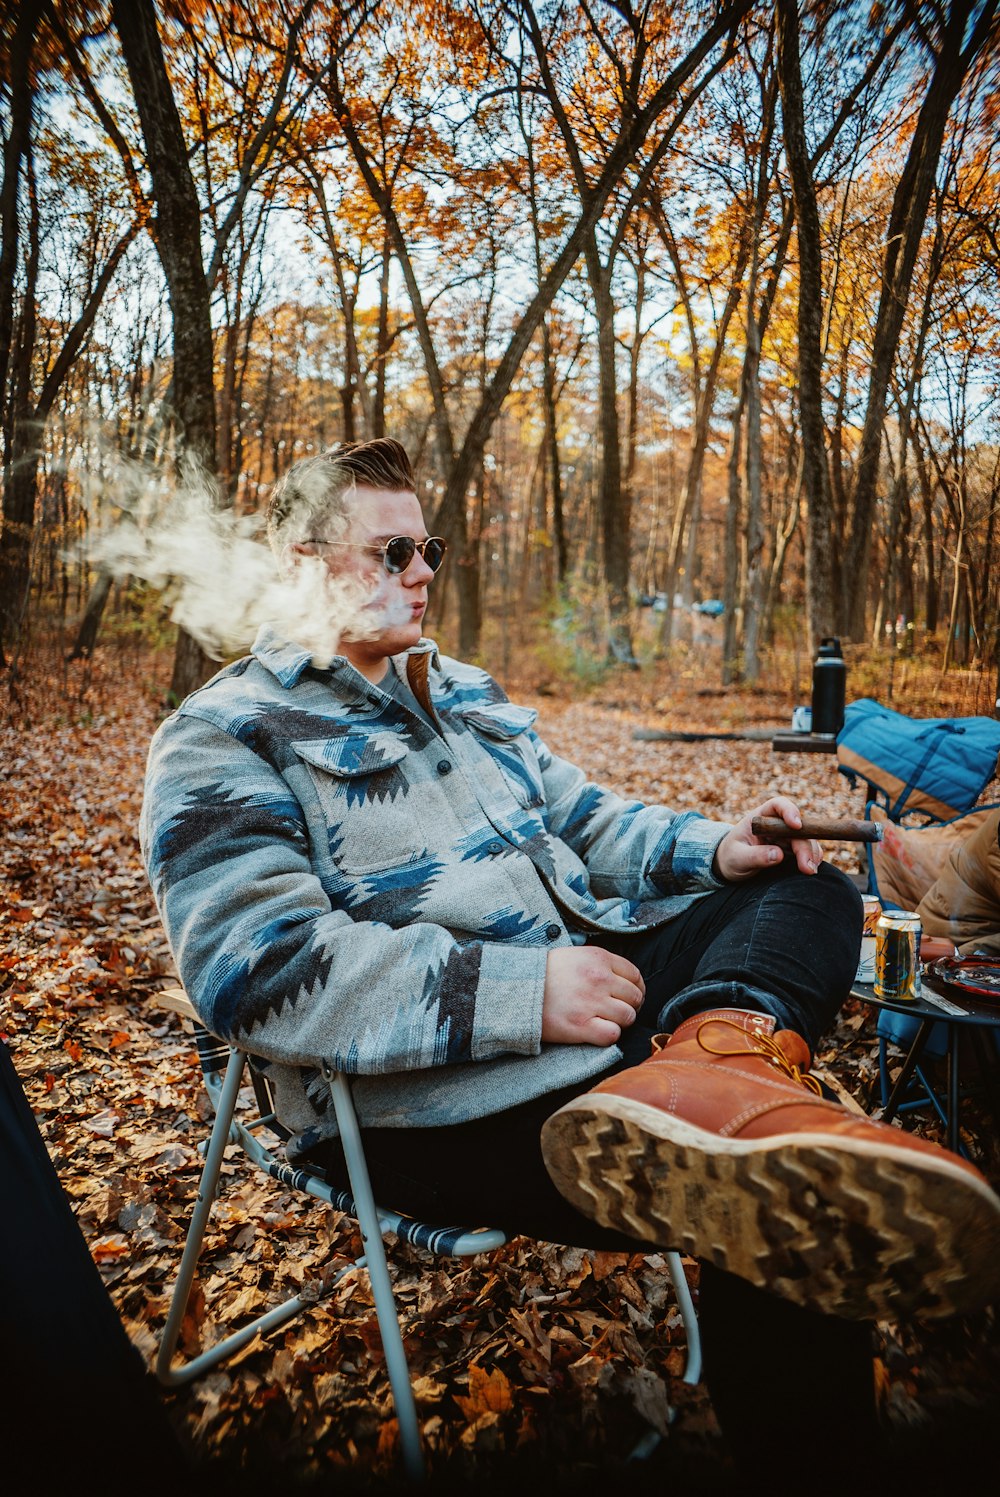 un uomo seduto su una sedia con una sigaretta in bocca